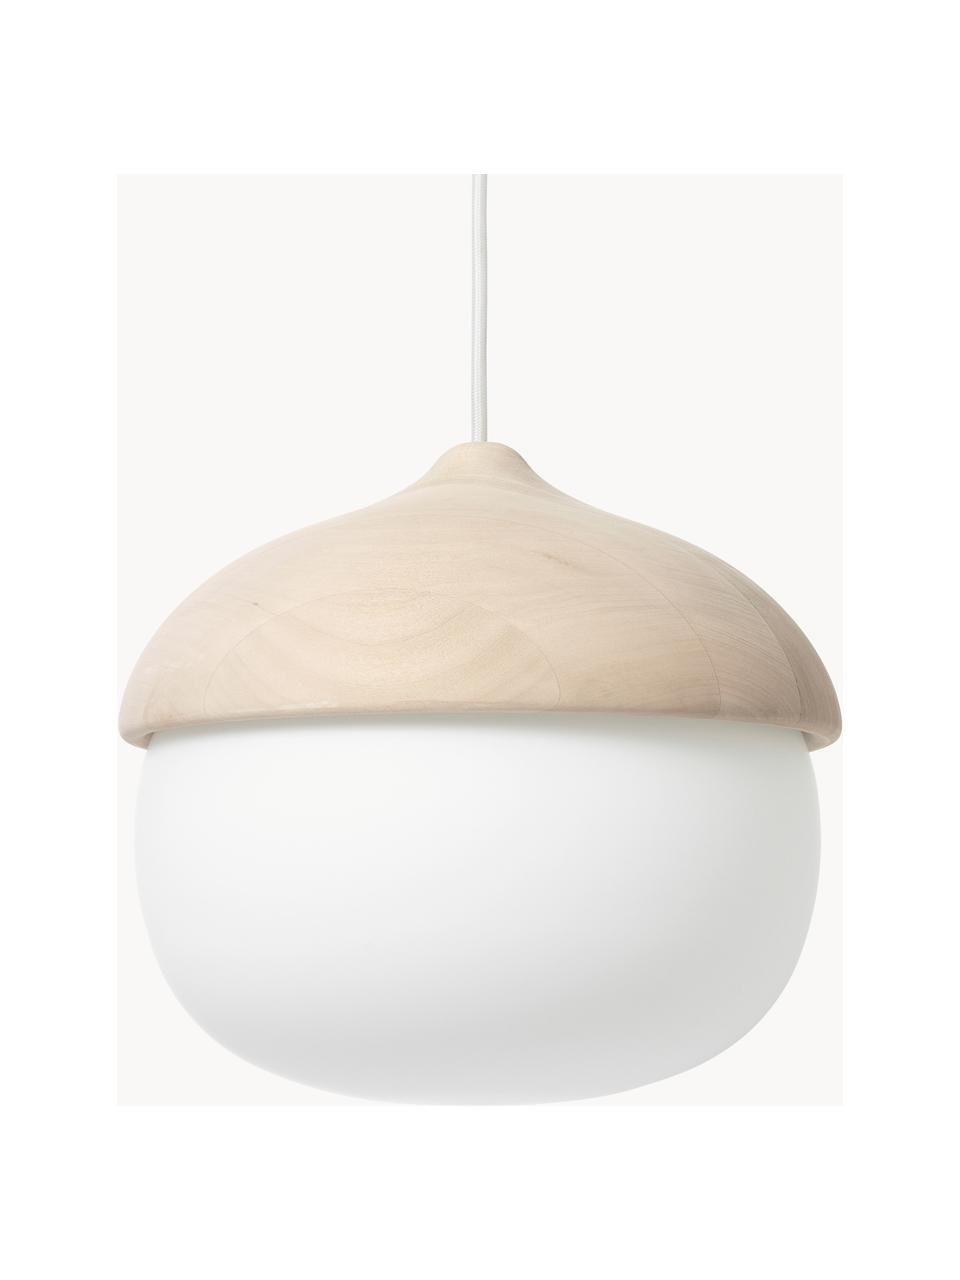 Hanglamp Terho  in de eikelvorm, mondgeblazen, Lindenhout, wit, Ø 31 x H 30 cm